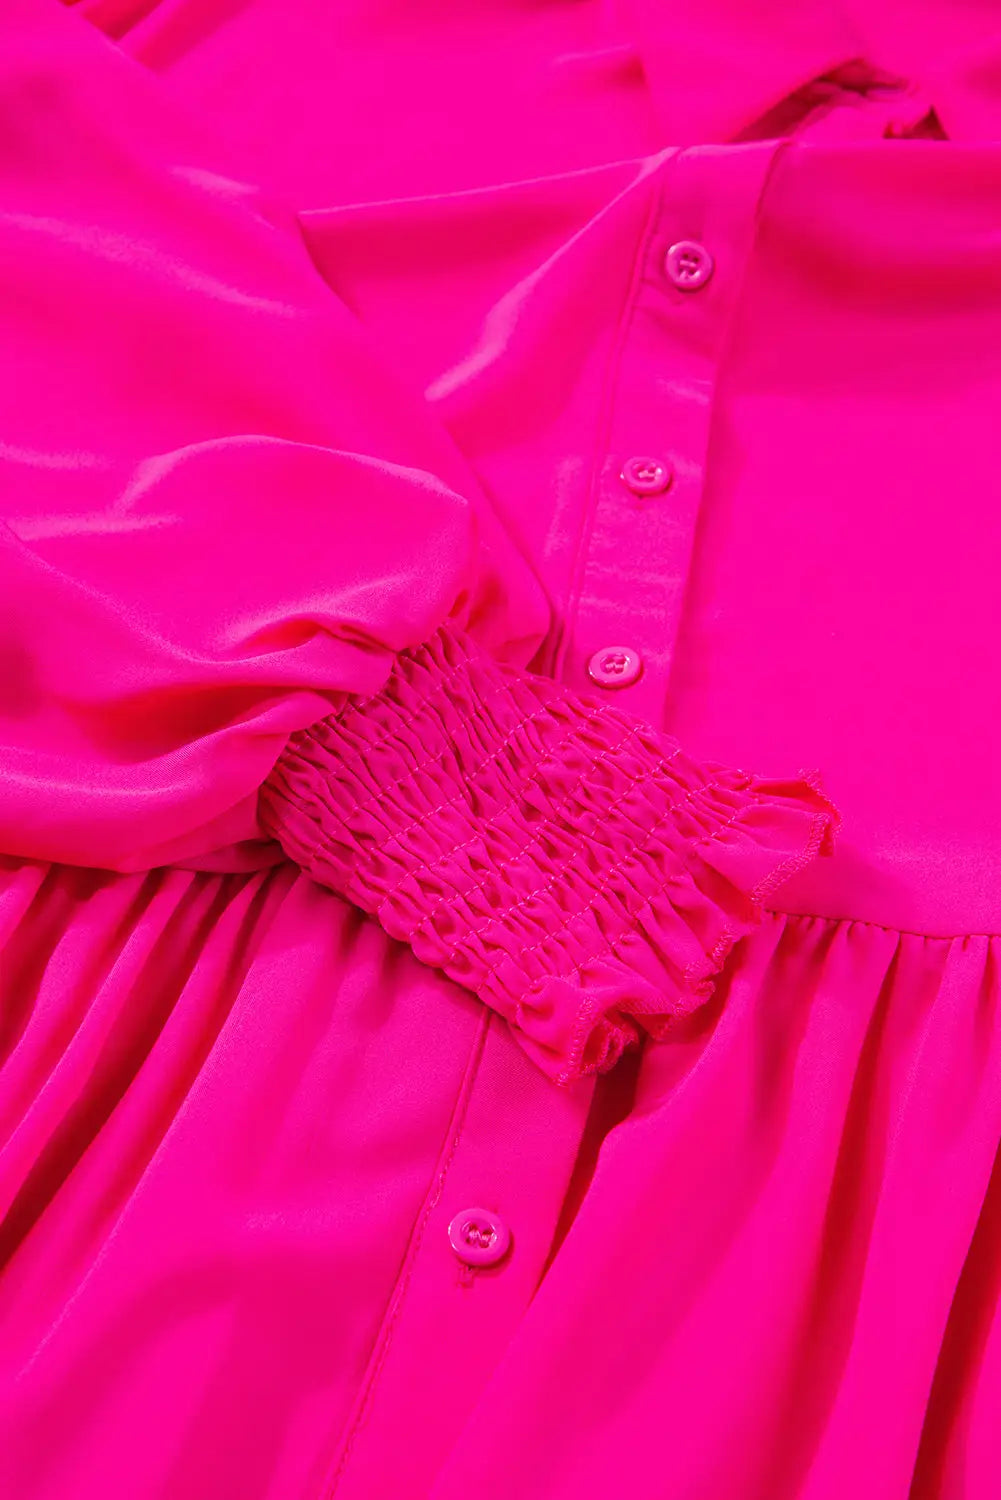 Rose bubble sleeve shirt maxi dress - dresses